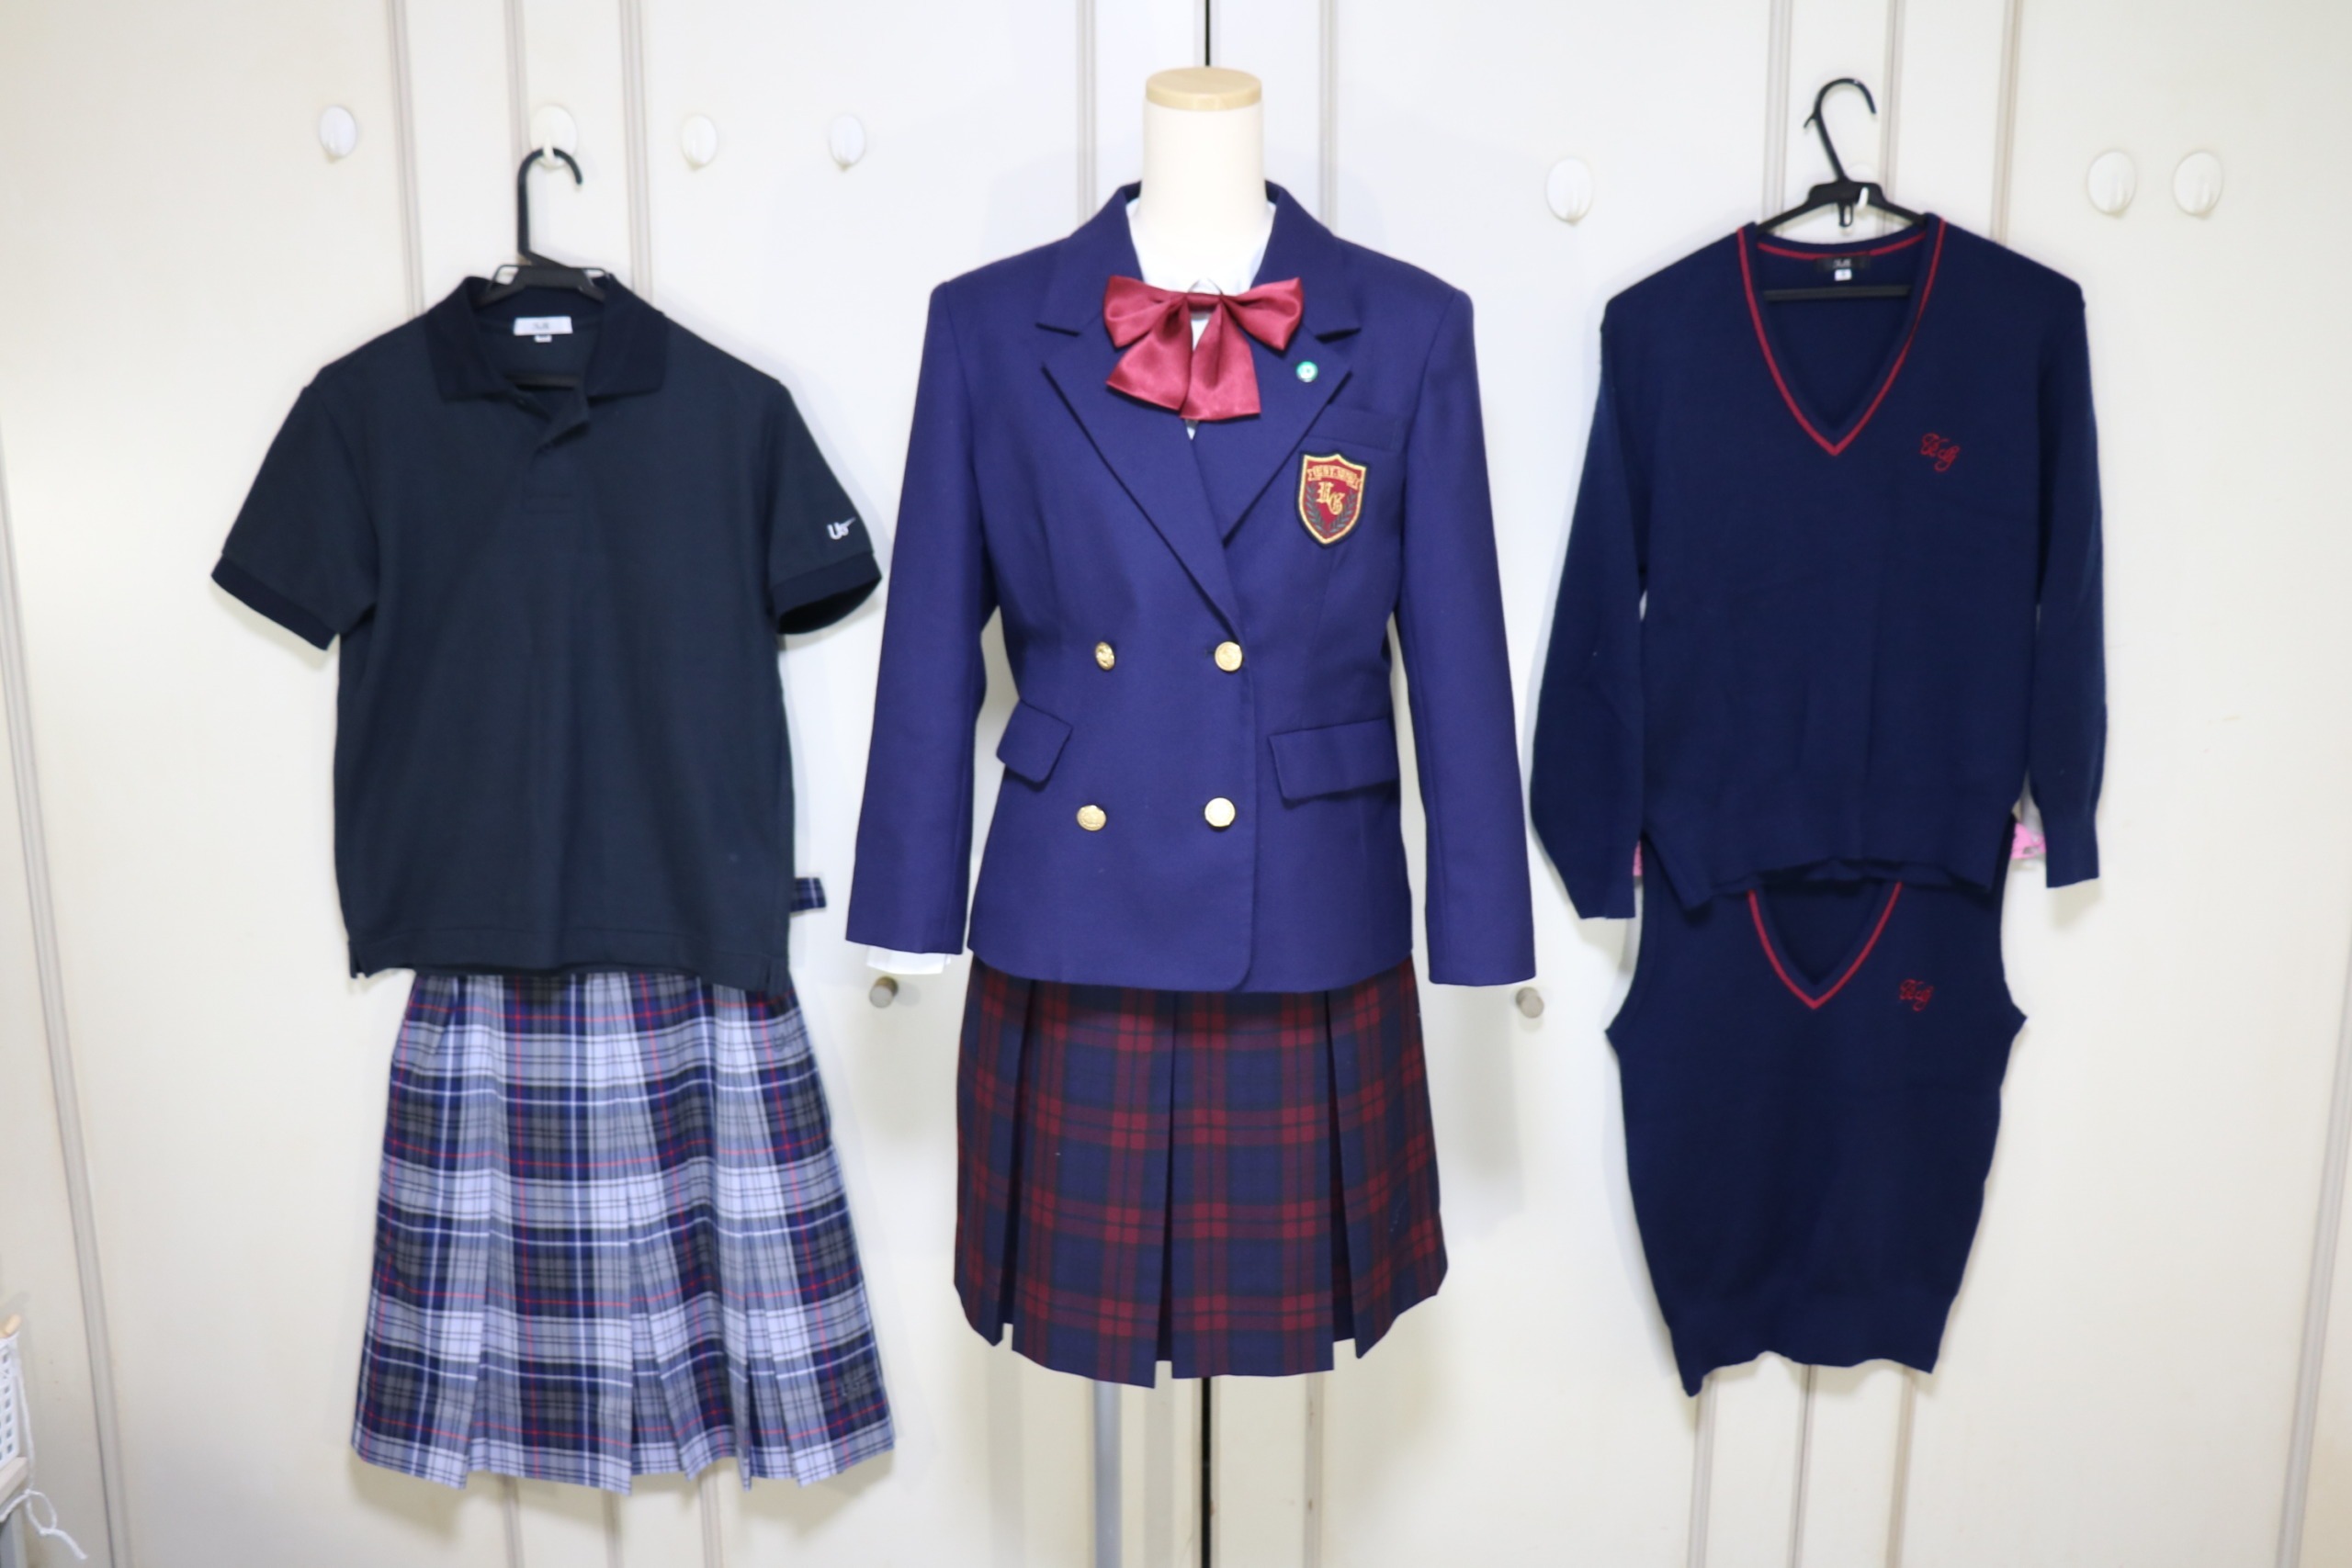 埼玉県さいたま市 私立 浦和学院高等学校【うらわがくいんこうとうがっこう】の校章付きフルセットコンプリートの女子ブレザー制服一式を買取しました | 制服 買取東京2020